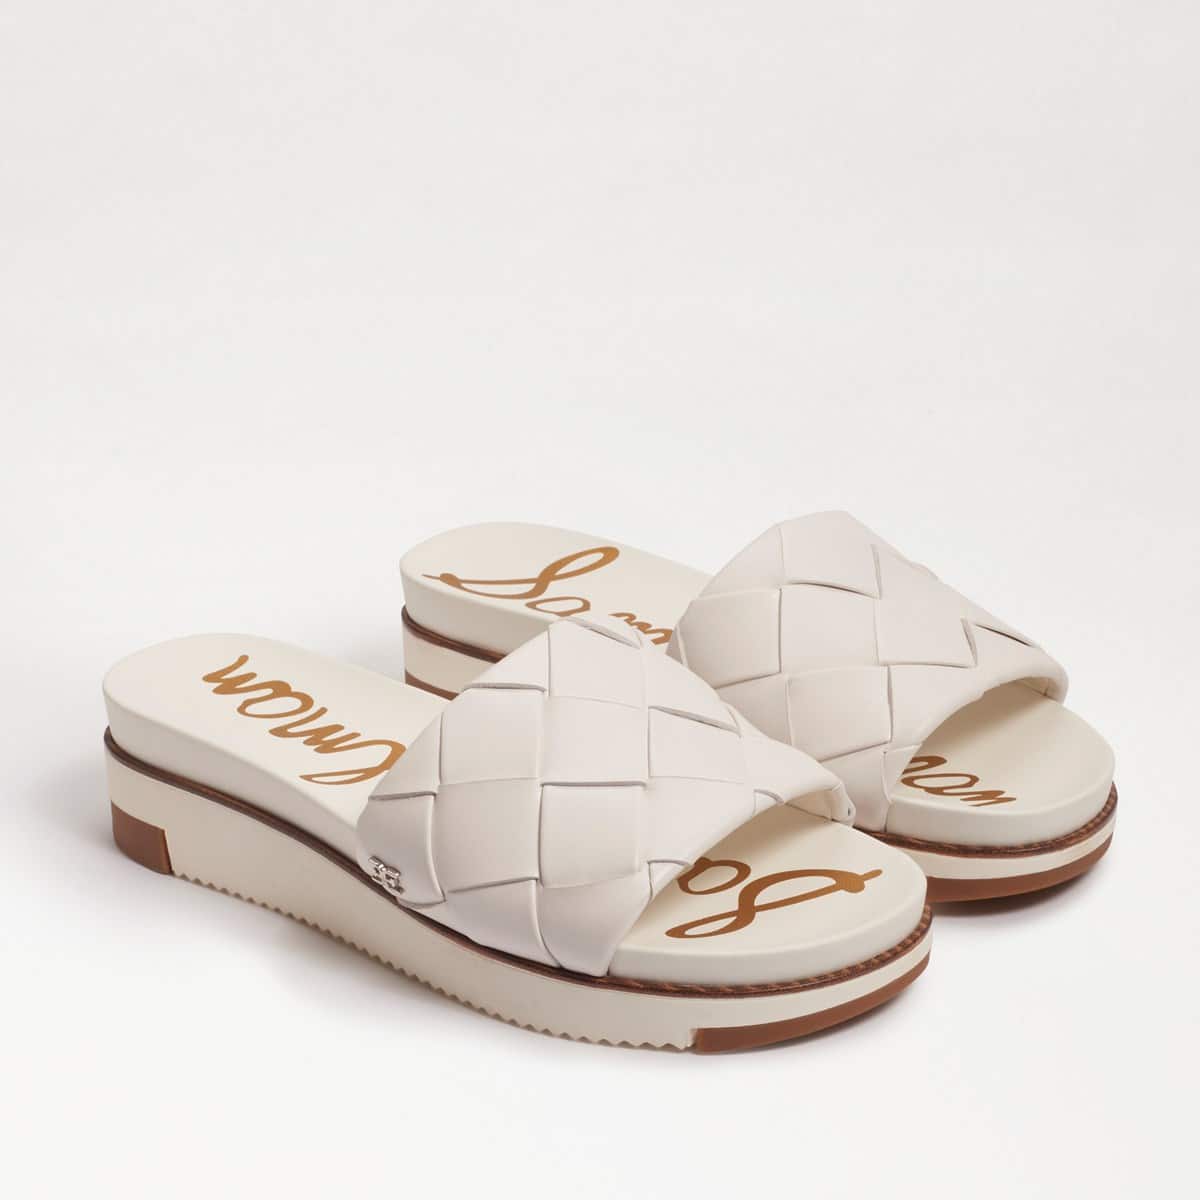 Sam Edelman Adaley Woven Slide Sandal Bright White Leather lohAh